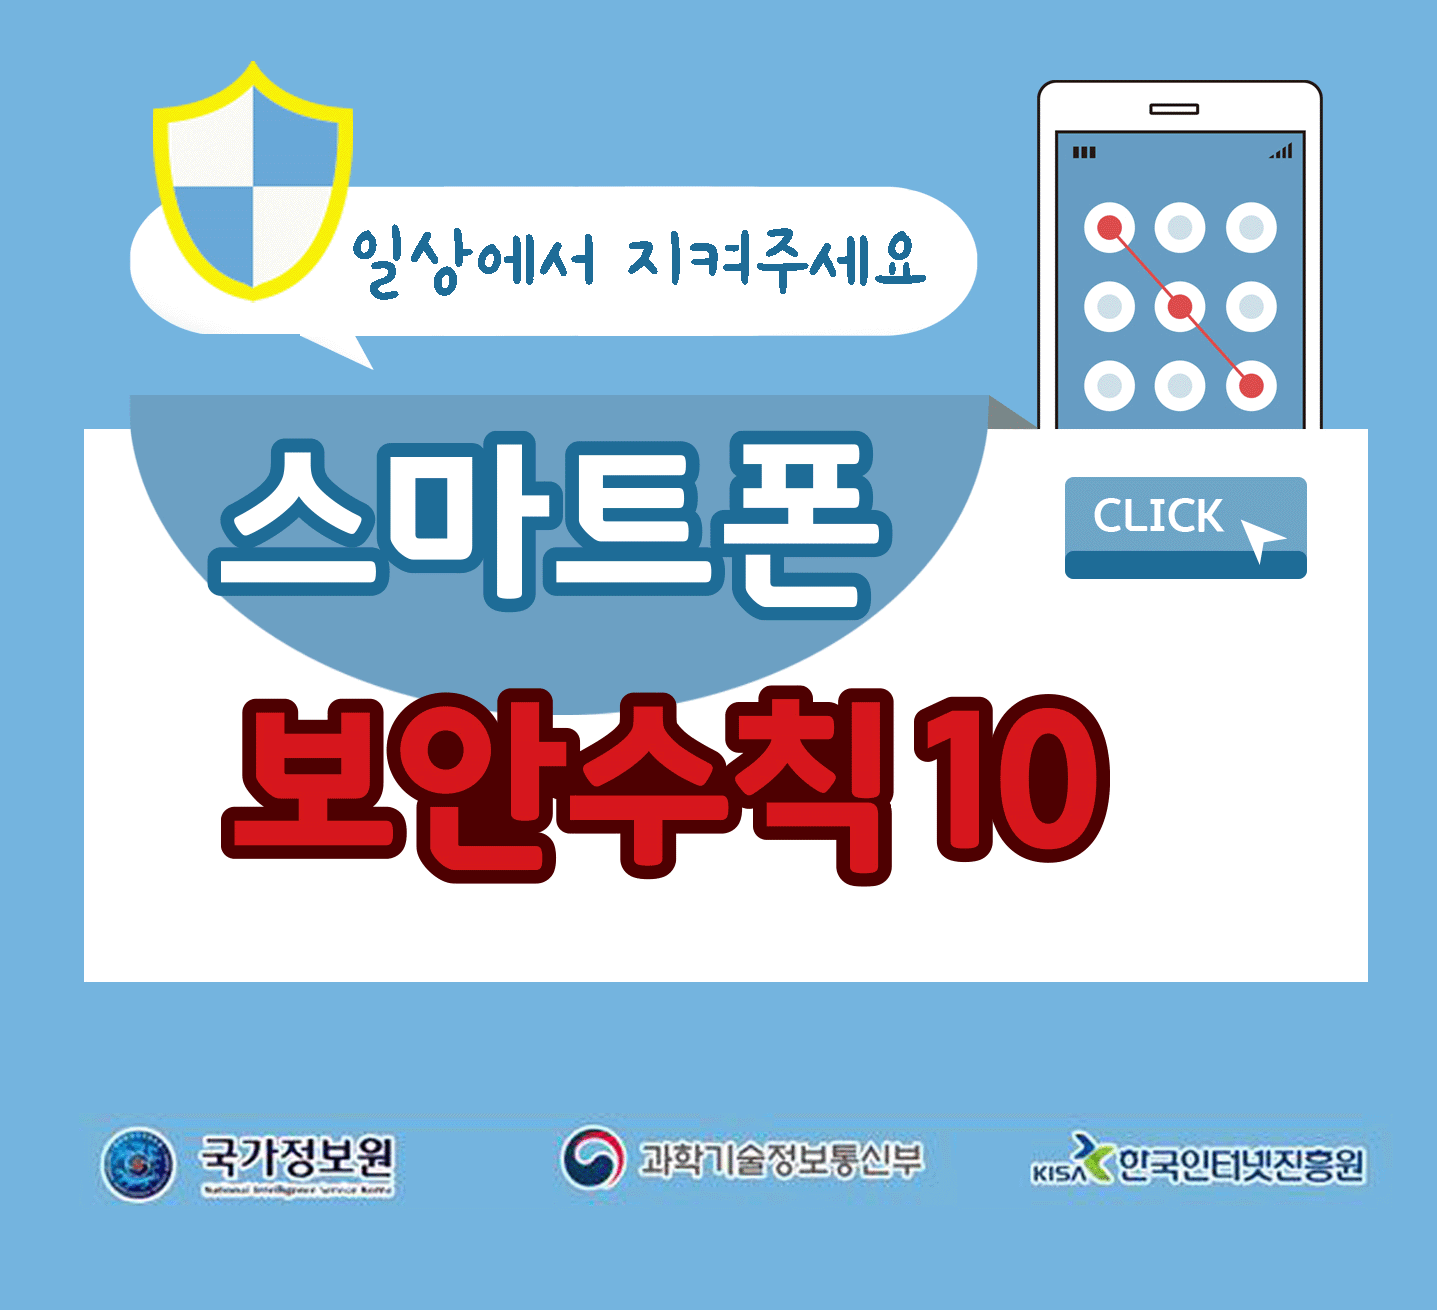 일상에서 지켜주세요
스마트폰 보안수칙 10 CLICK
국가정보원, 과학기술정보통신부, 한국인터넷진흥원;jsessionid=9EE61A586D581859365153FE435B045B